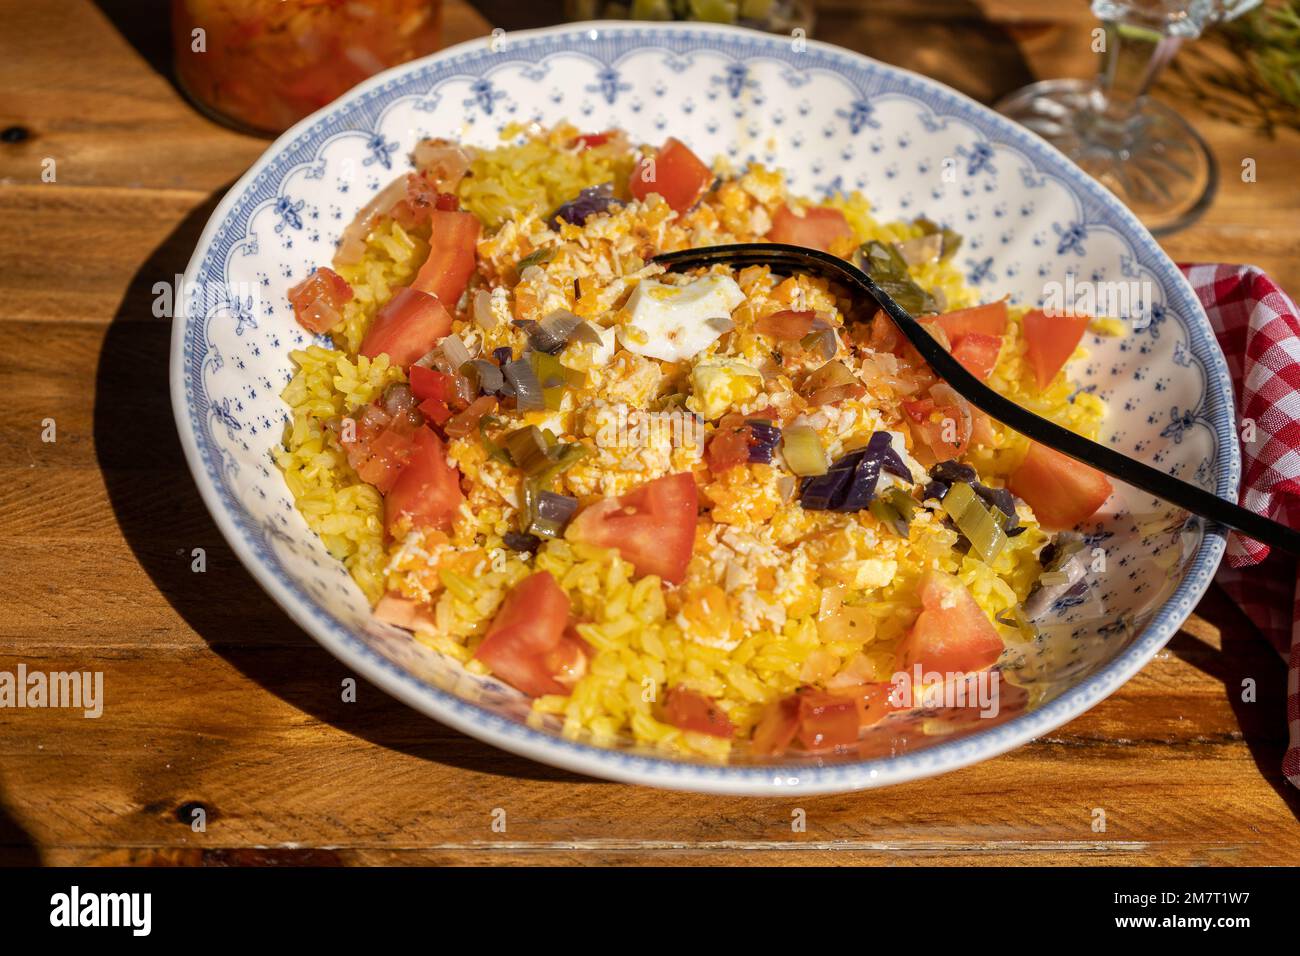 Assiette profonde sur une table en bois avec une salade de poulet, de riz et de tomates maison. Concept de nourriture saine, naturelle et fraîche. Vue haute. Banque D'Images